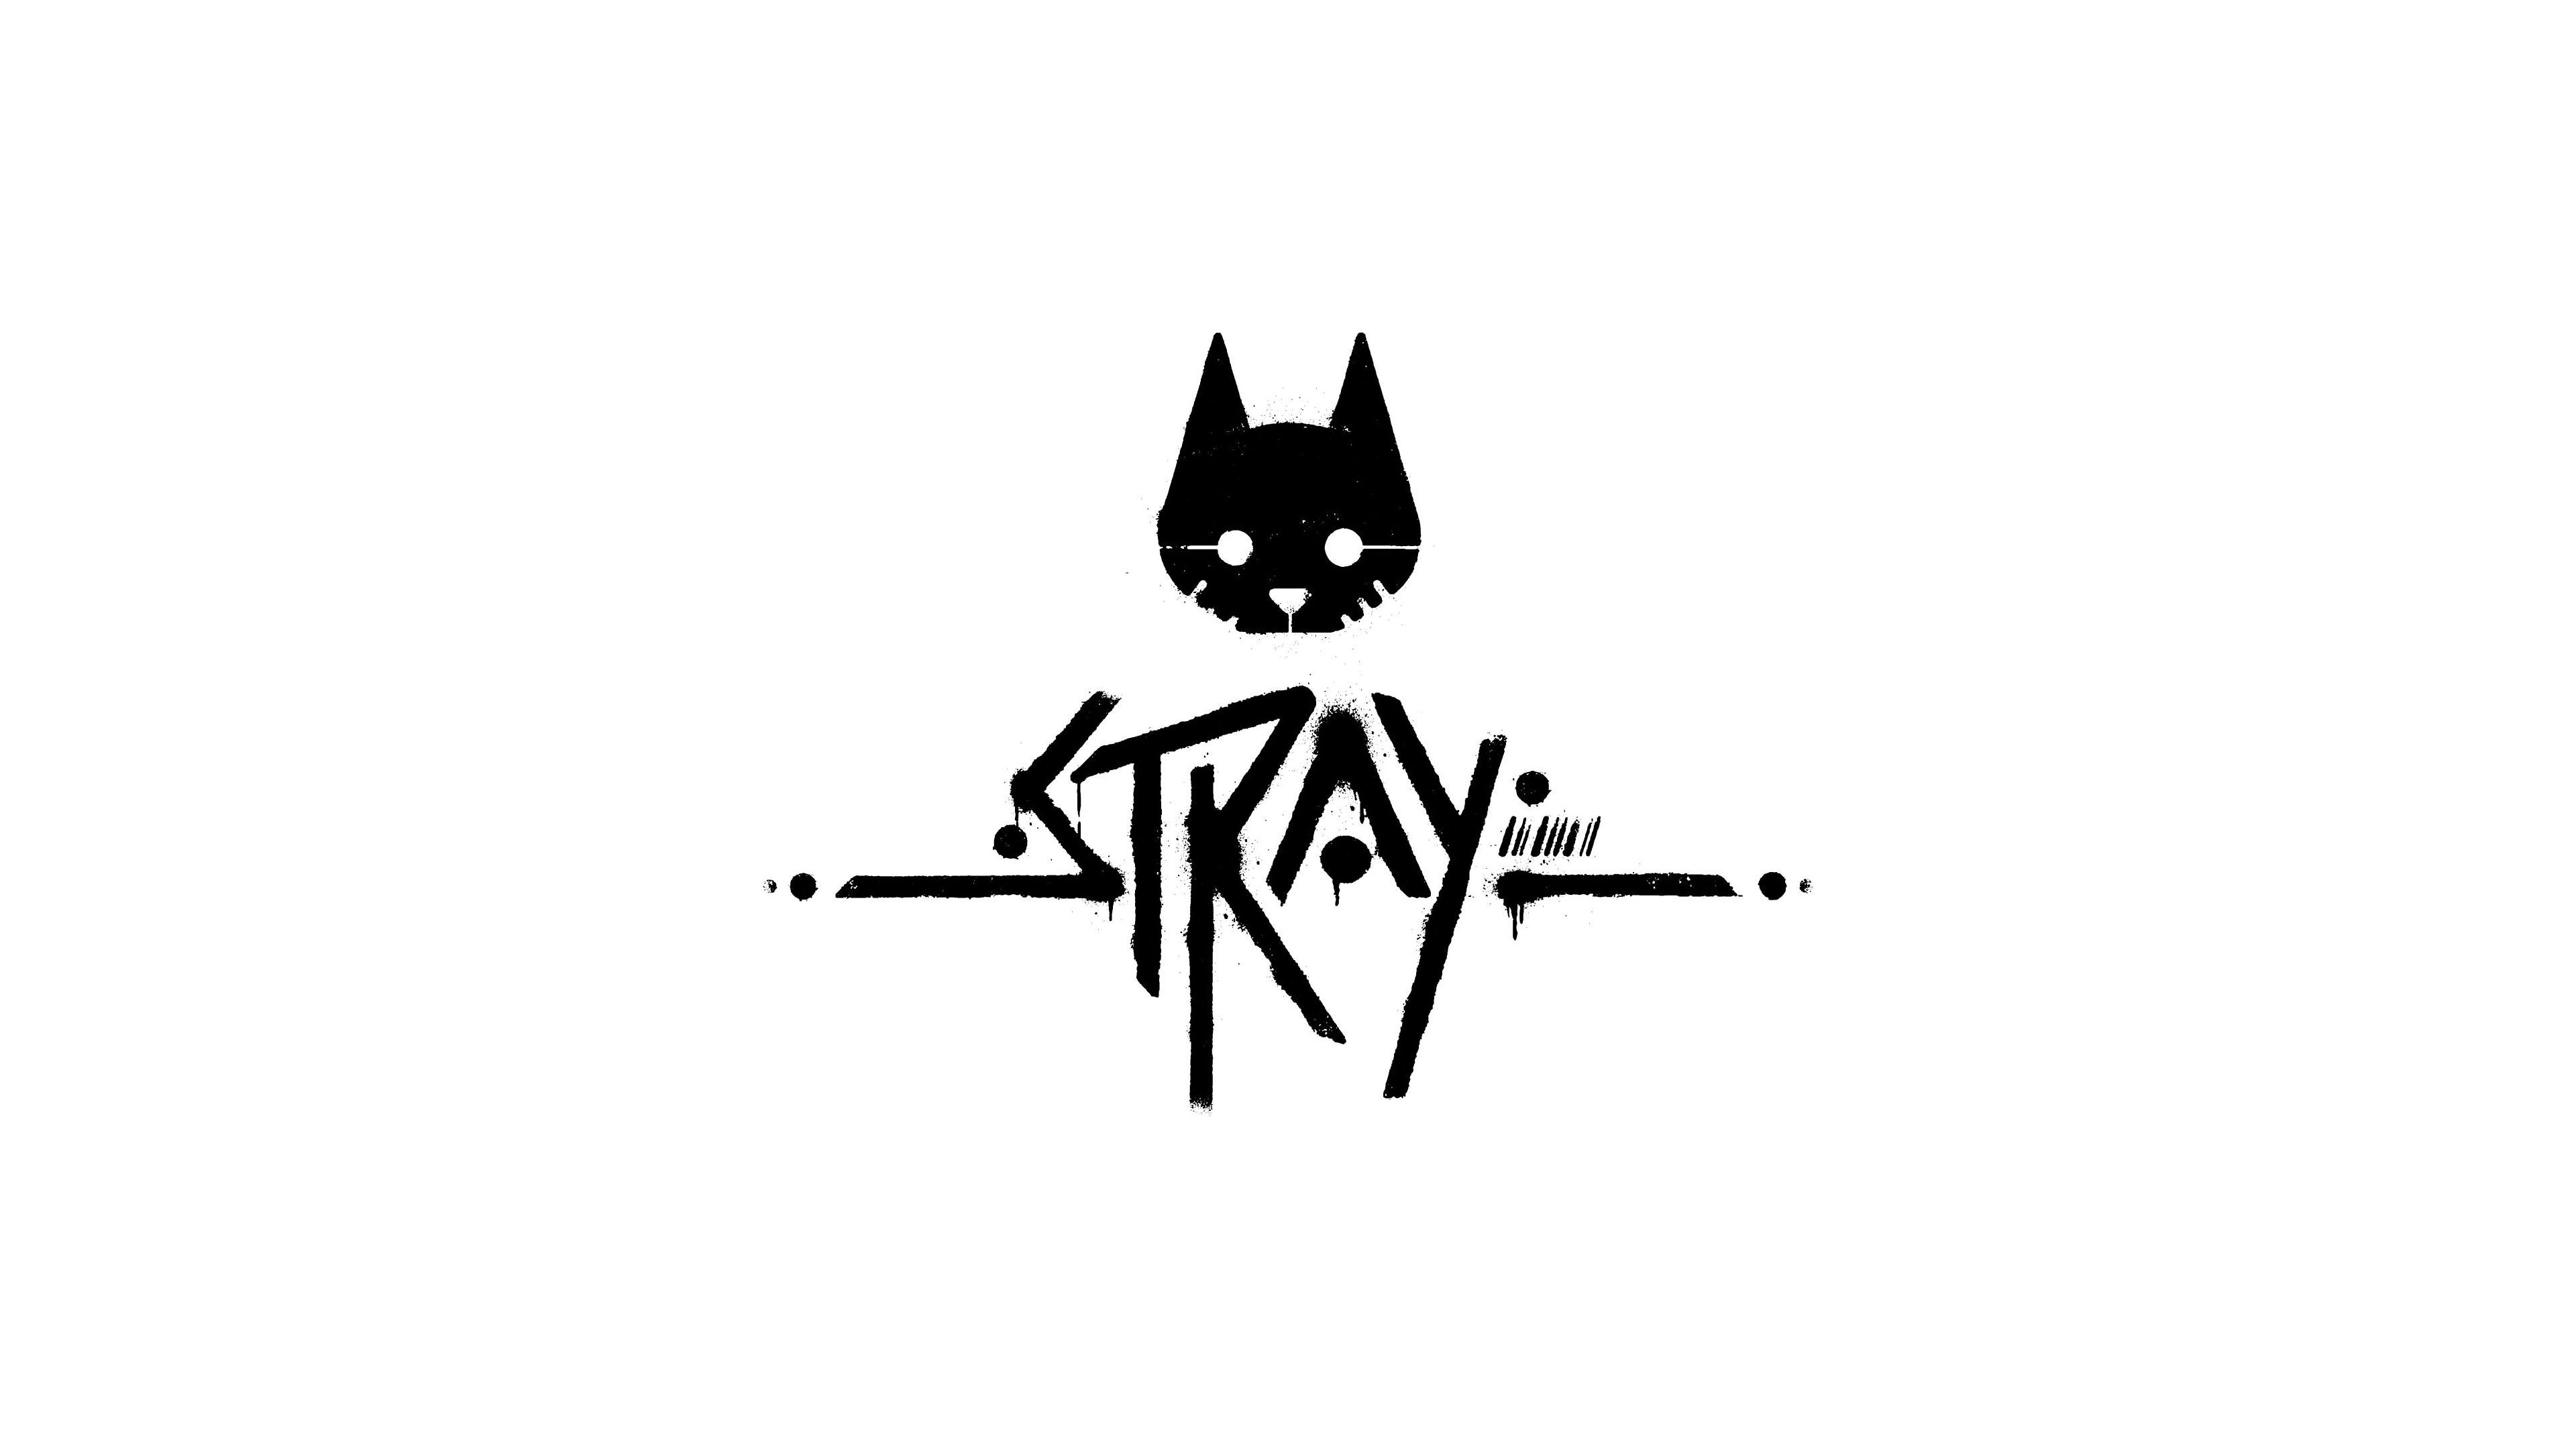 Trademark Logo STRAY